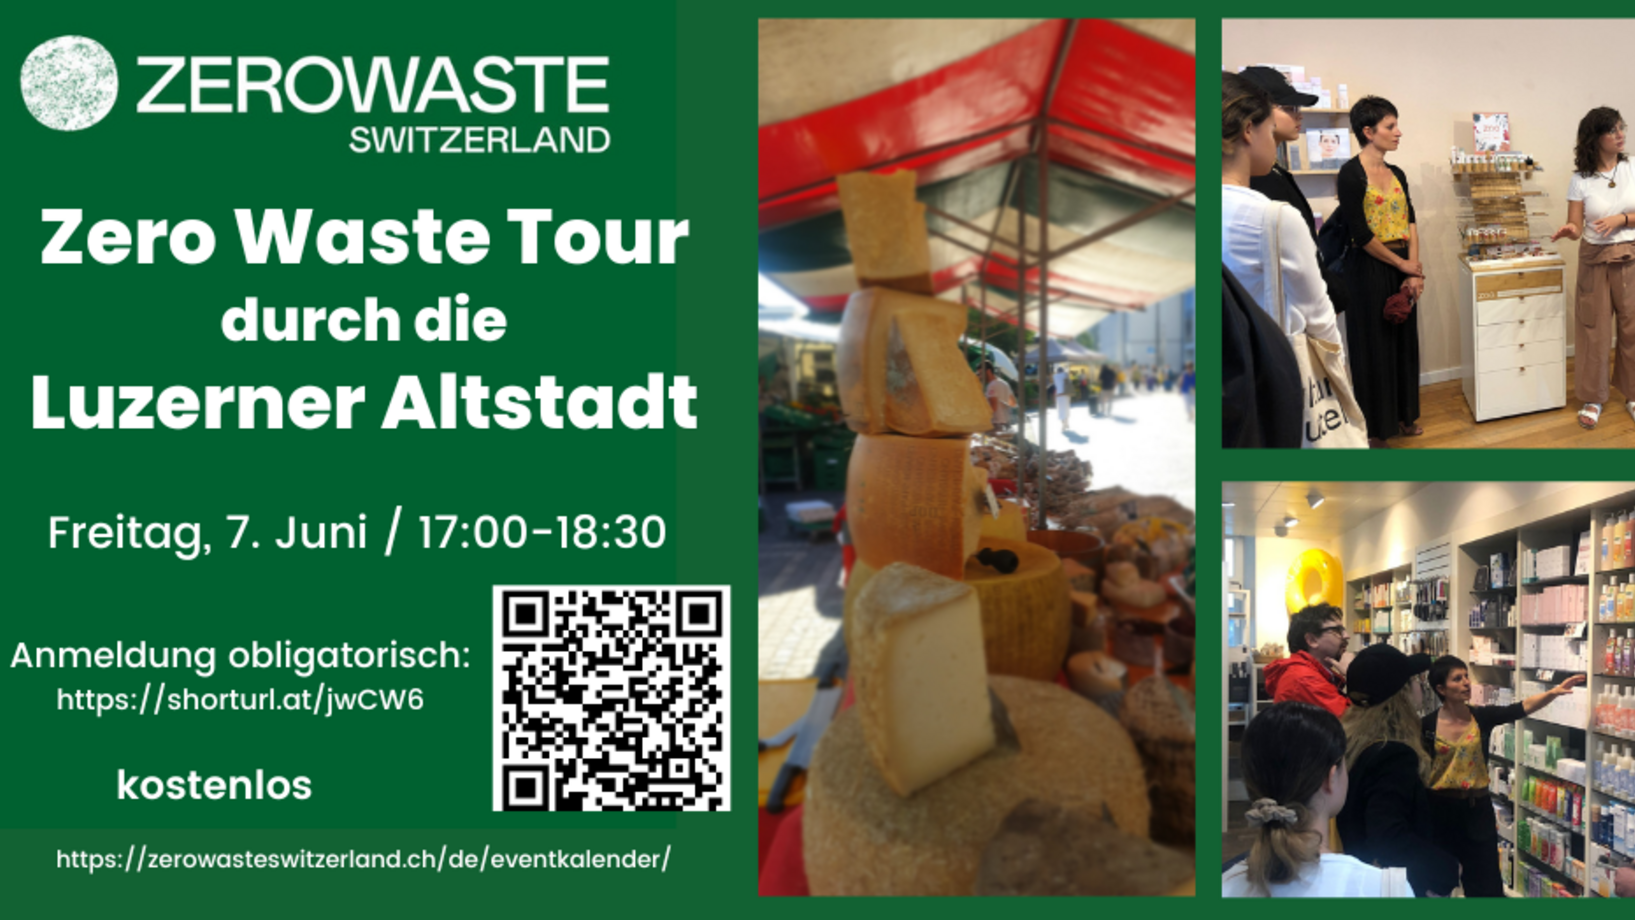 Komm mit und besuche mit uns spannende Geschäfte in der Luzerner Altstadt, die nach dem Motto weniger Abfall leben 